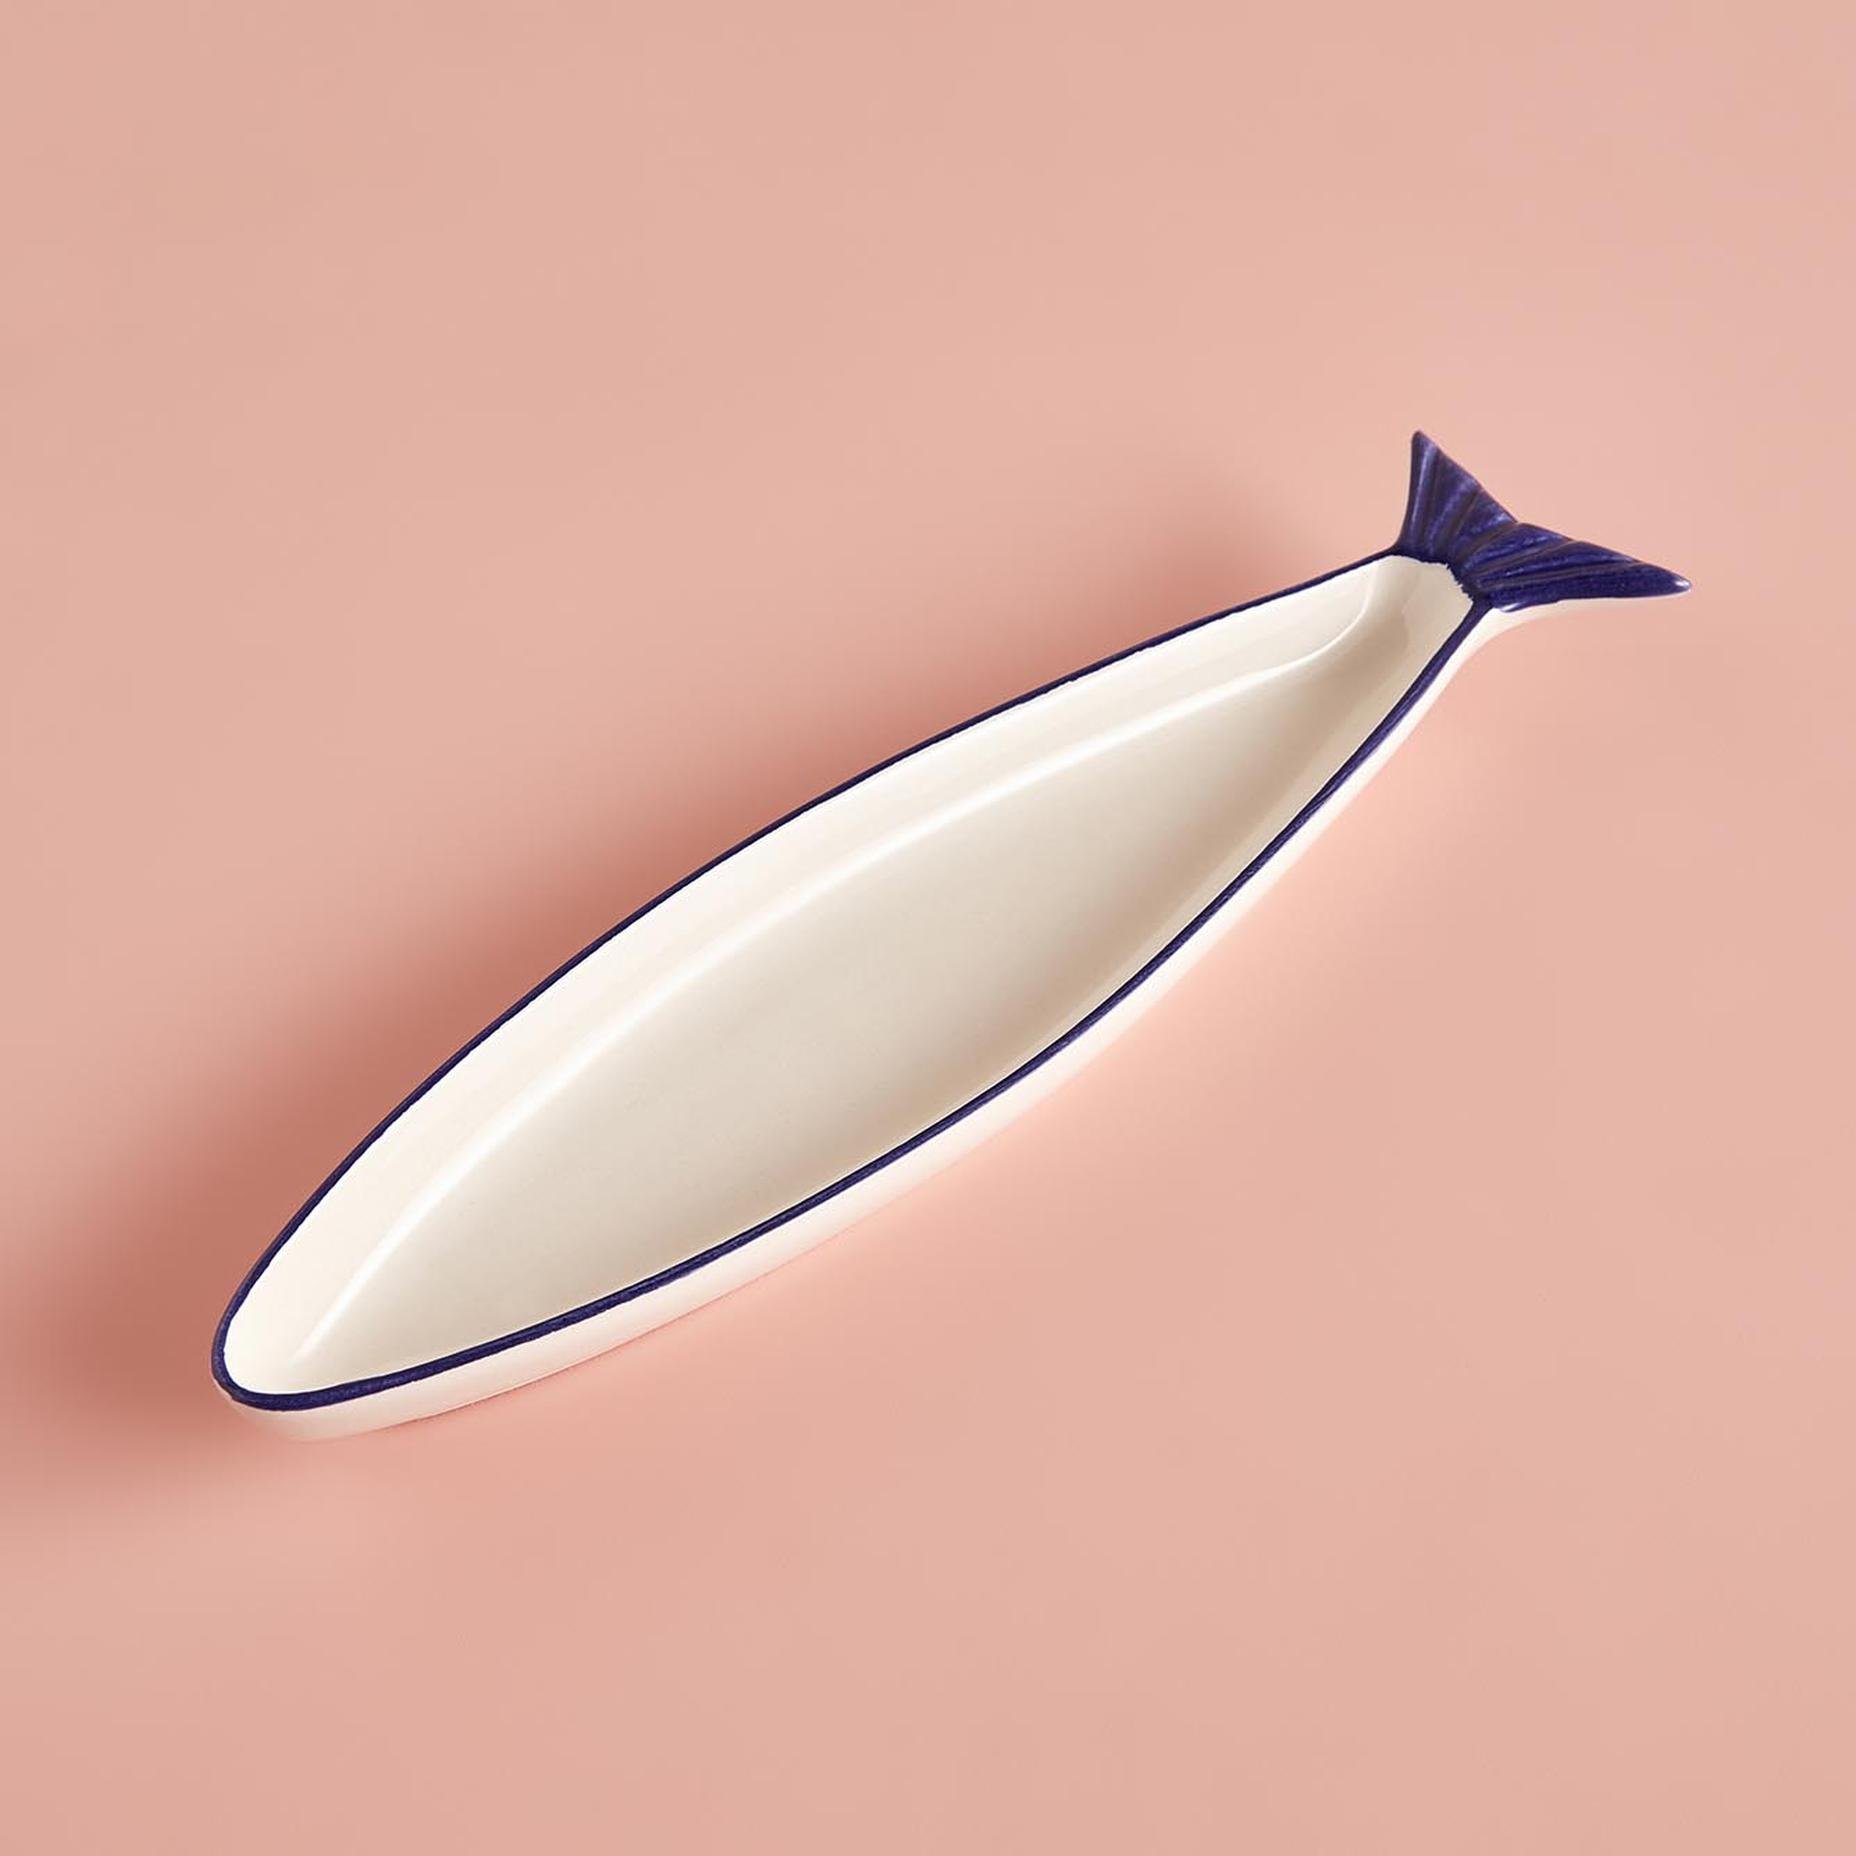 Balık Küçük Sunum Tabağı Beyaz-Lacivert (28 cm)